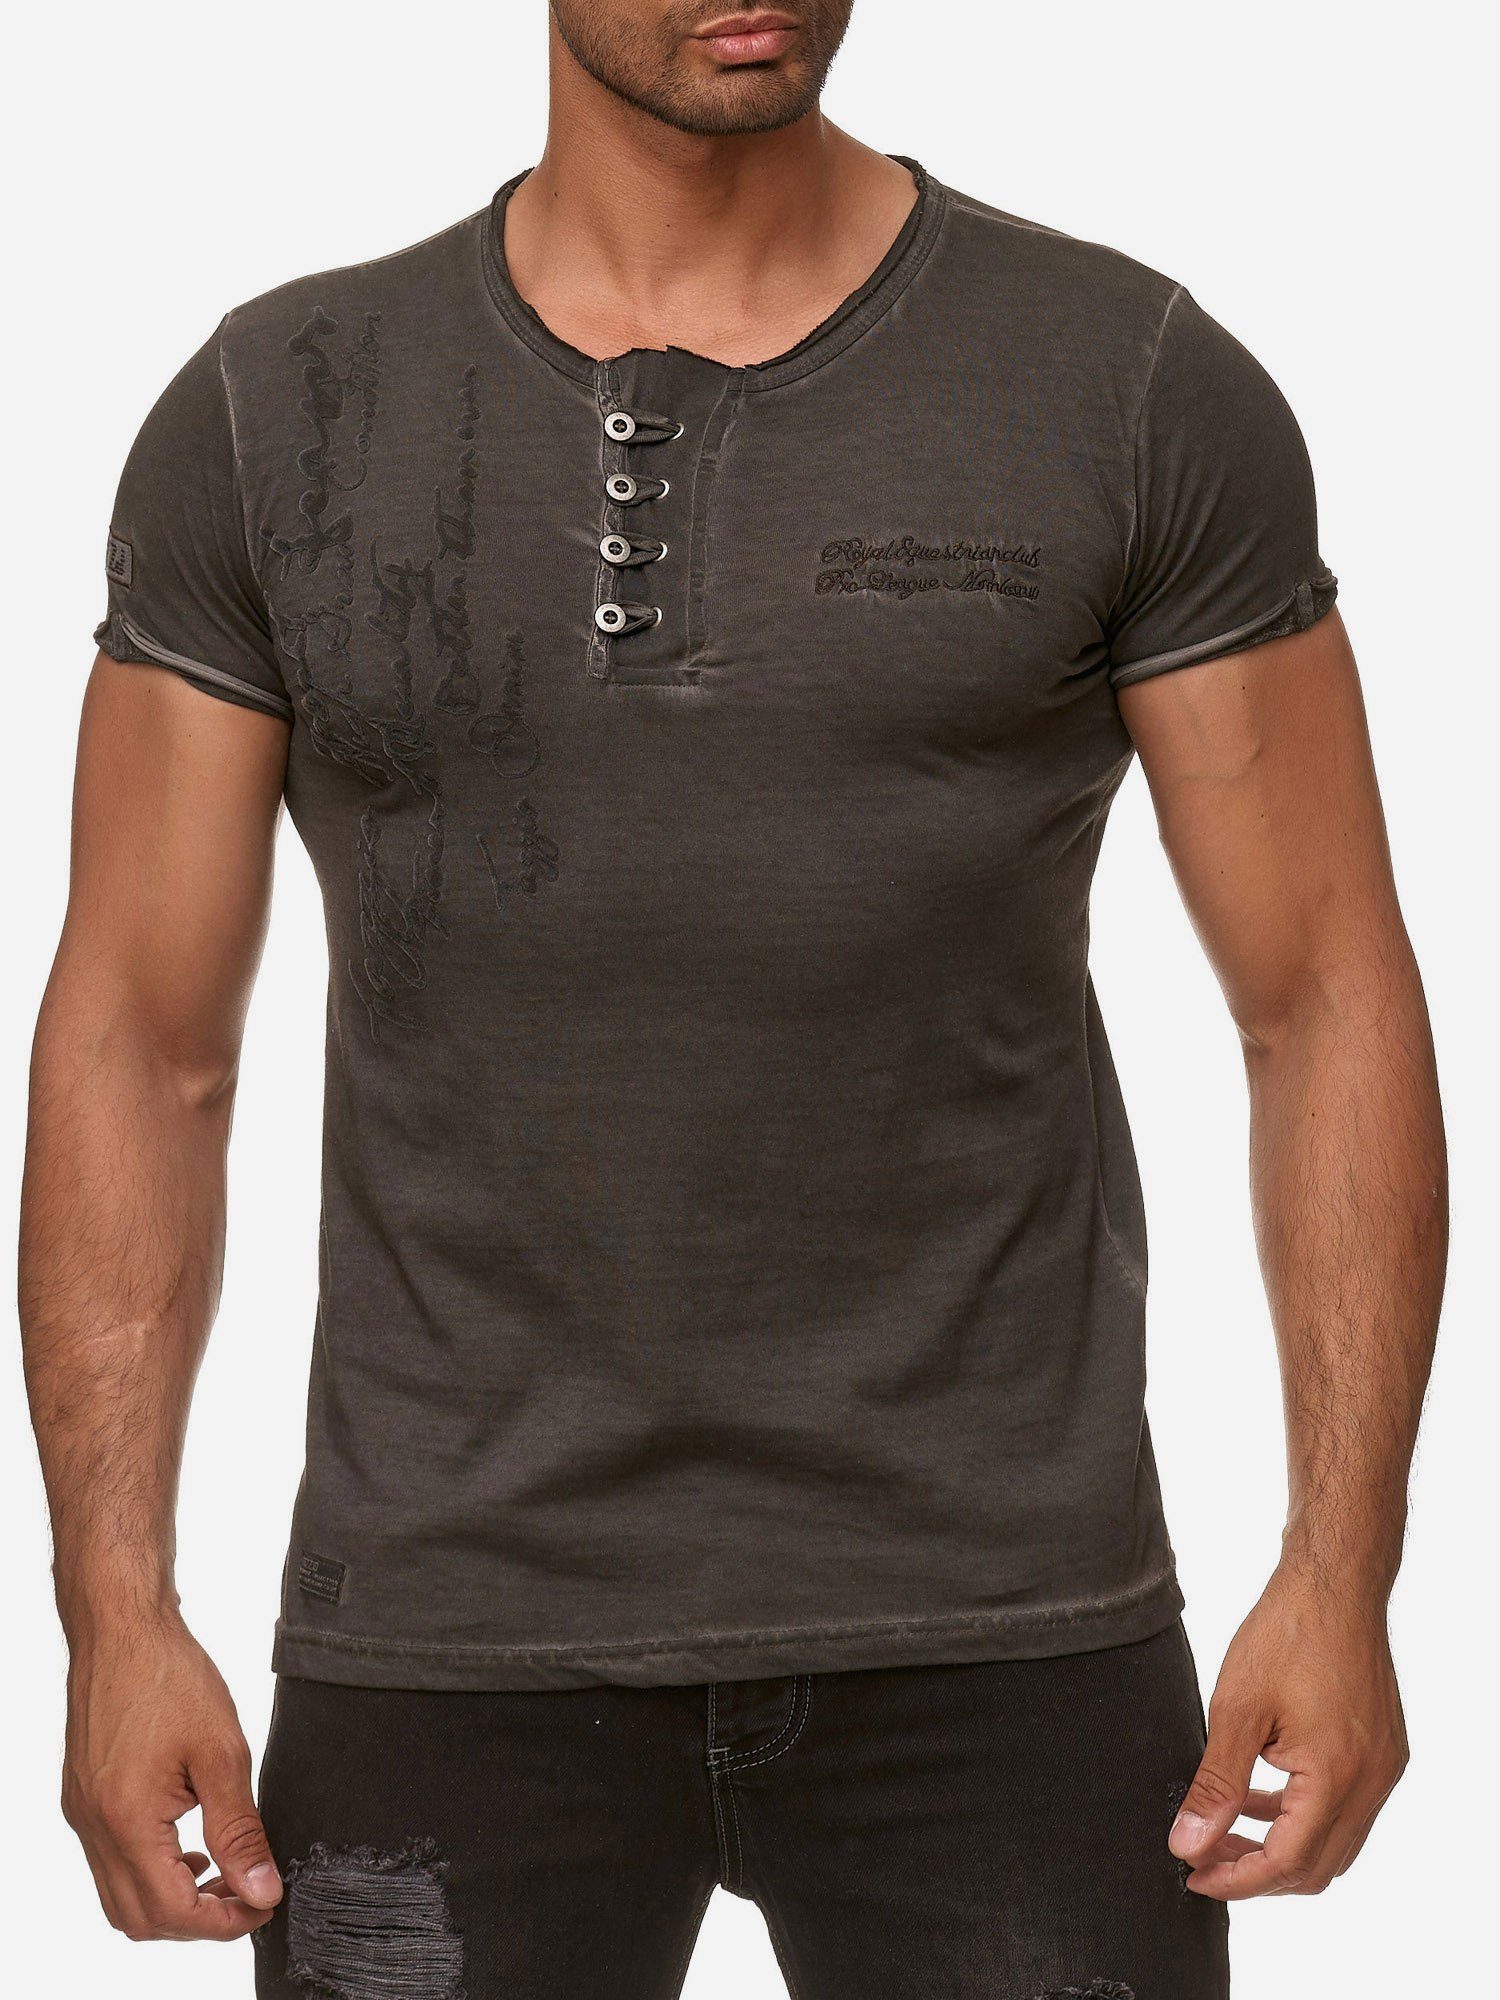 Tazzio T-Shirt 4050-1 Rundhalsshirt in Ölwaschung mit offenem Kragen und dezentem Used Look anthrazit